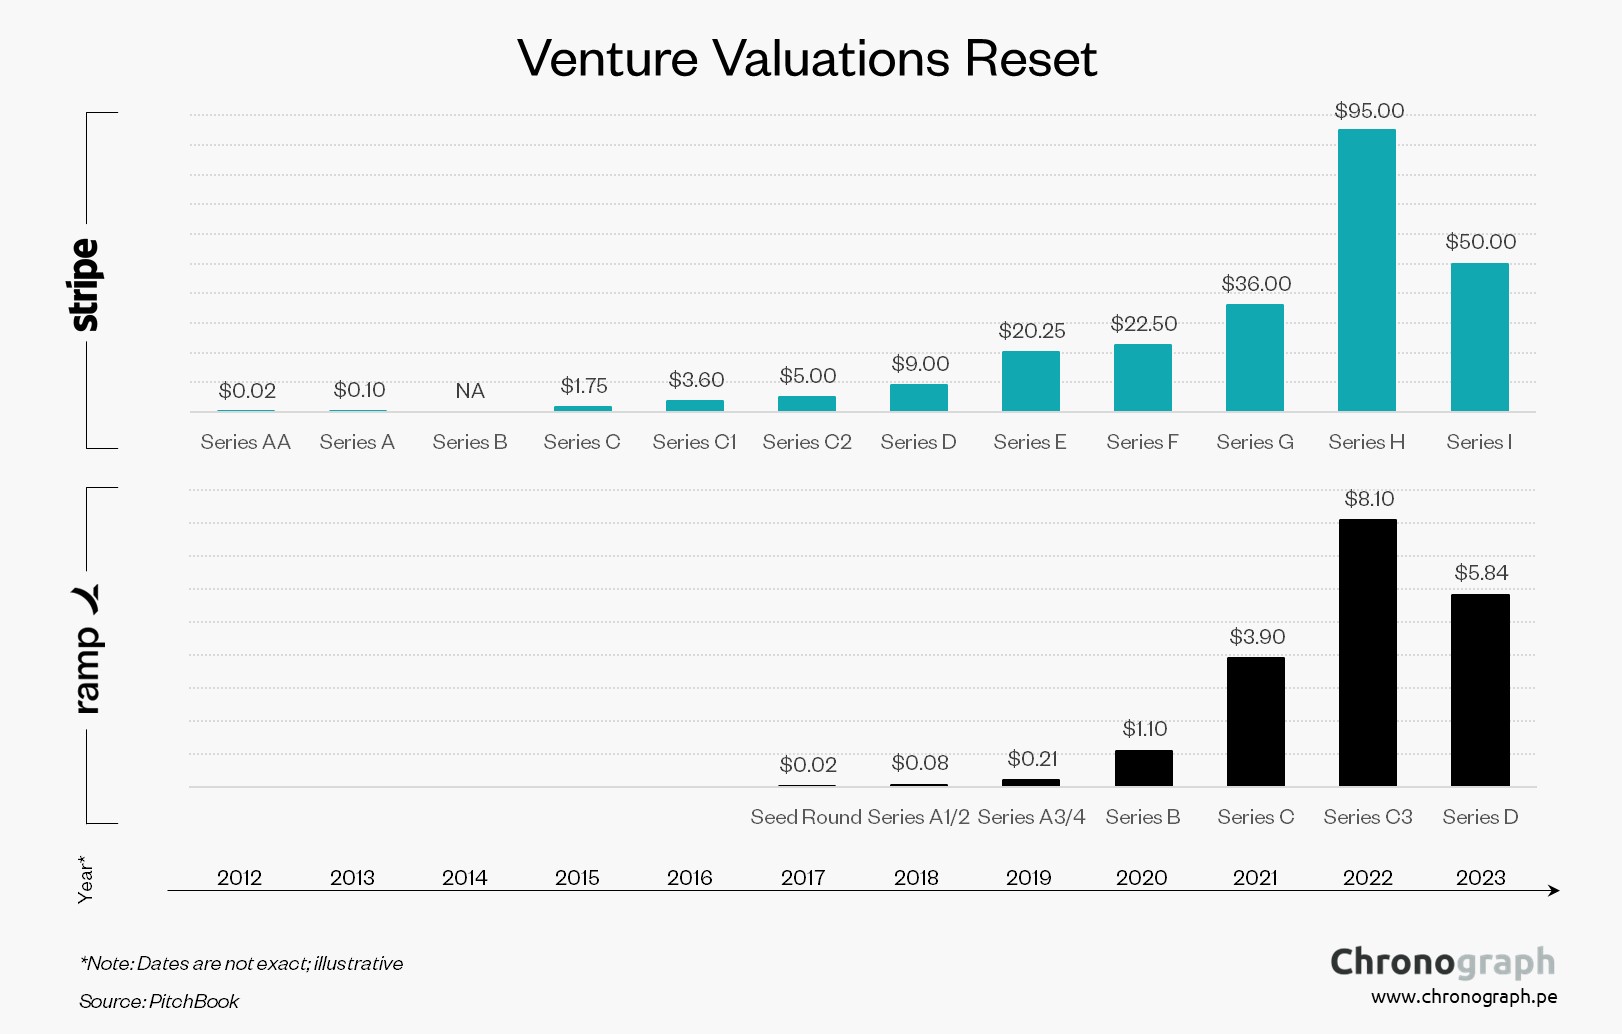 Venture Valuations Reset in 2023